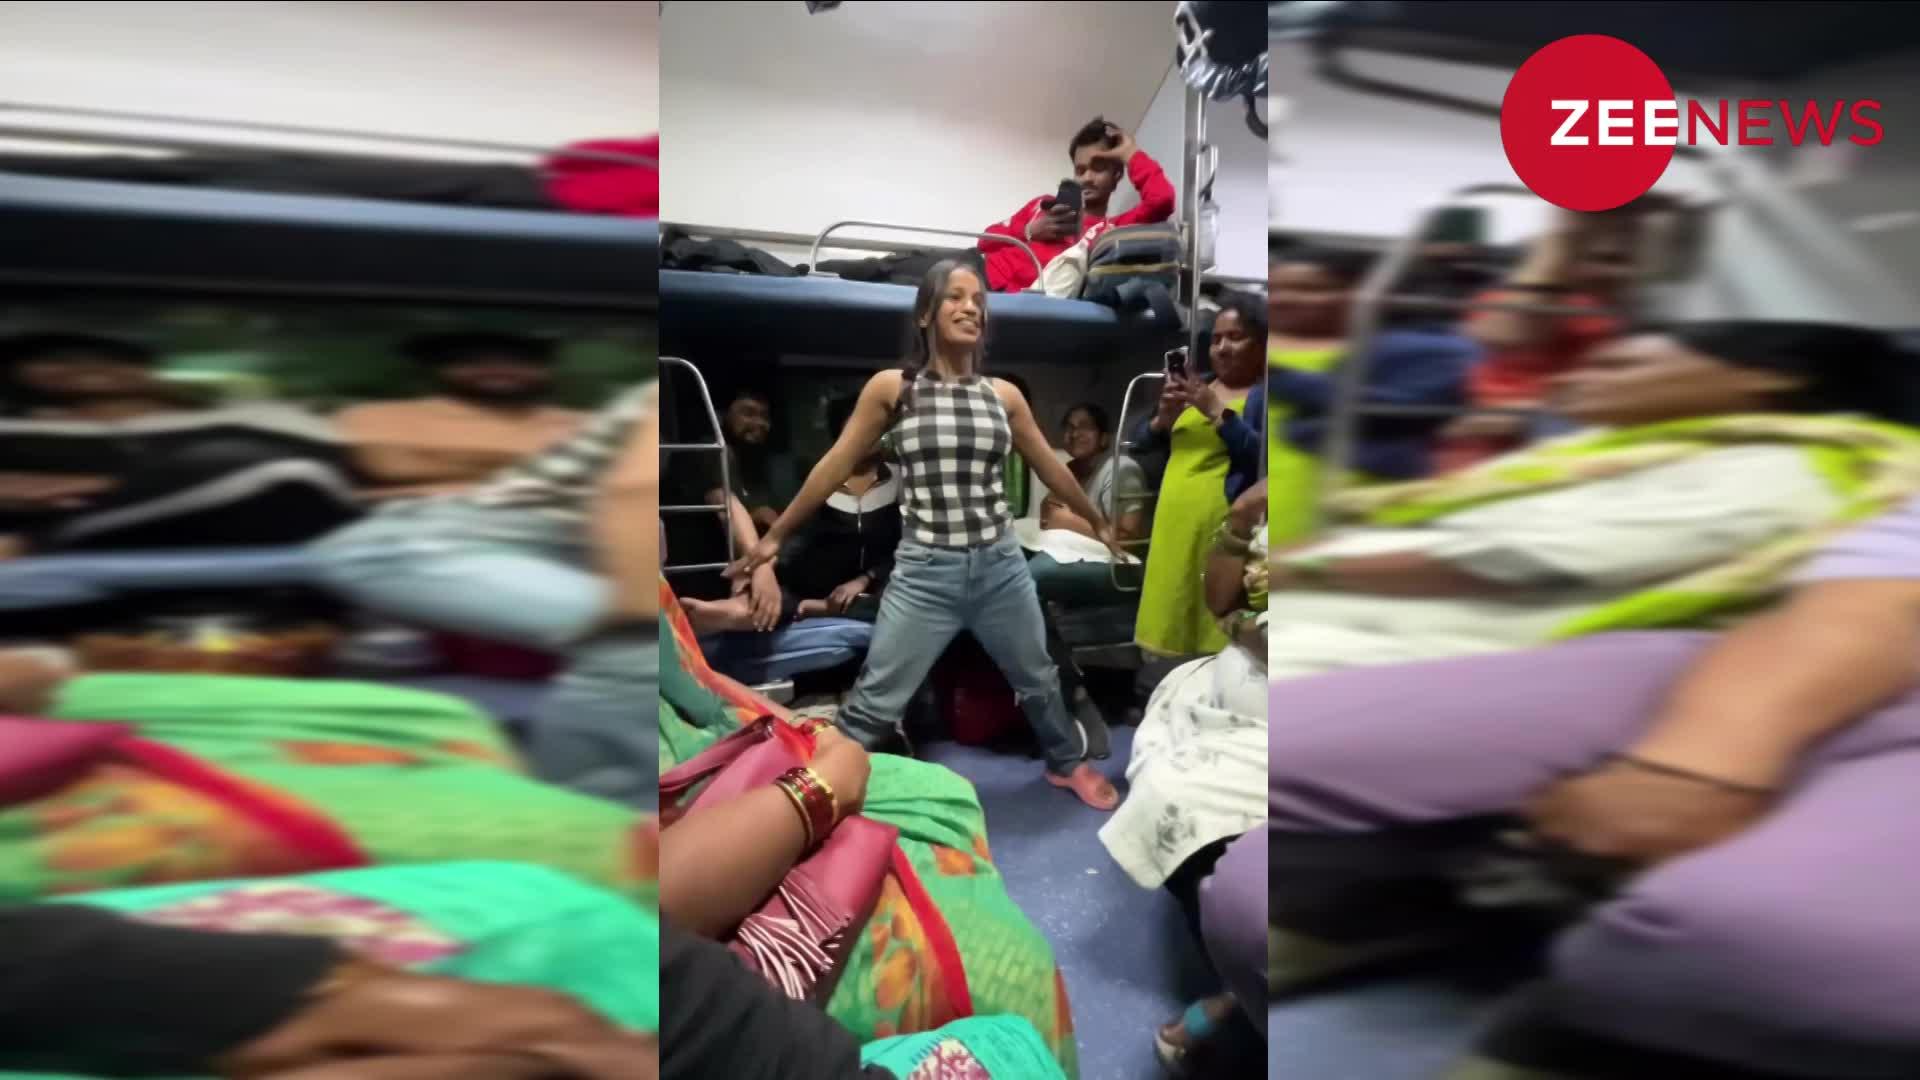 चलती ट्रेन में यात्रियों के सामने लड़की ने किया बेहद हॉट डांस, यूजर्स की नहीं हट रही निगाहें, बार-बार देख रहे वीडियो